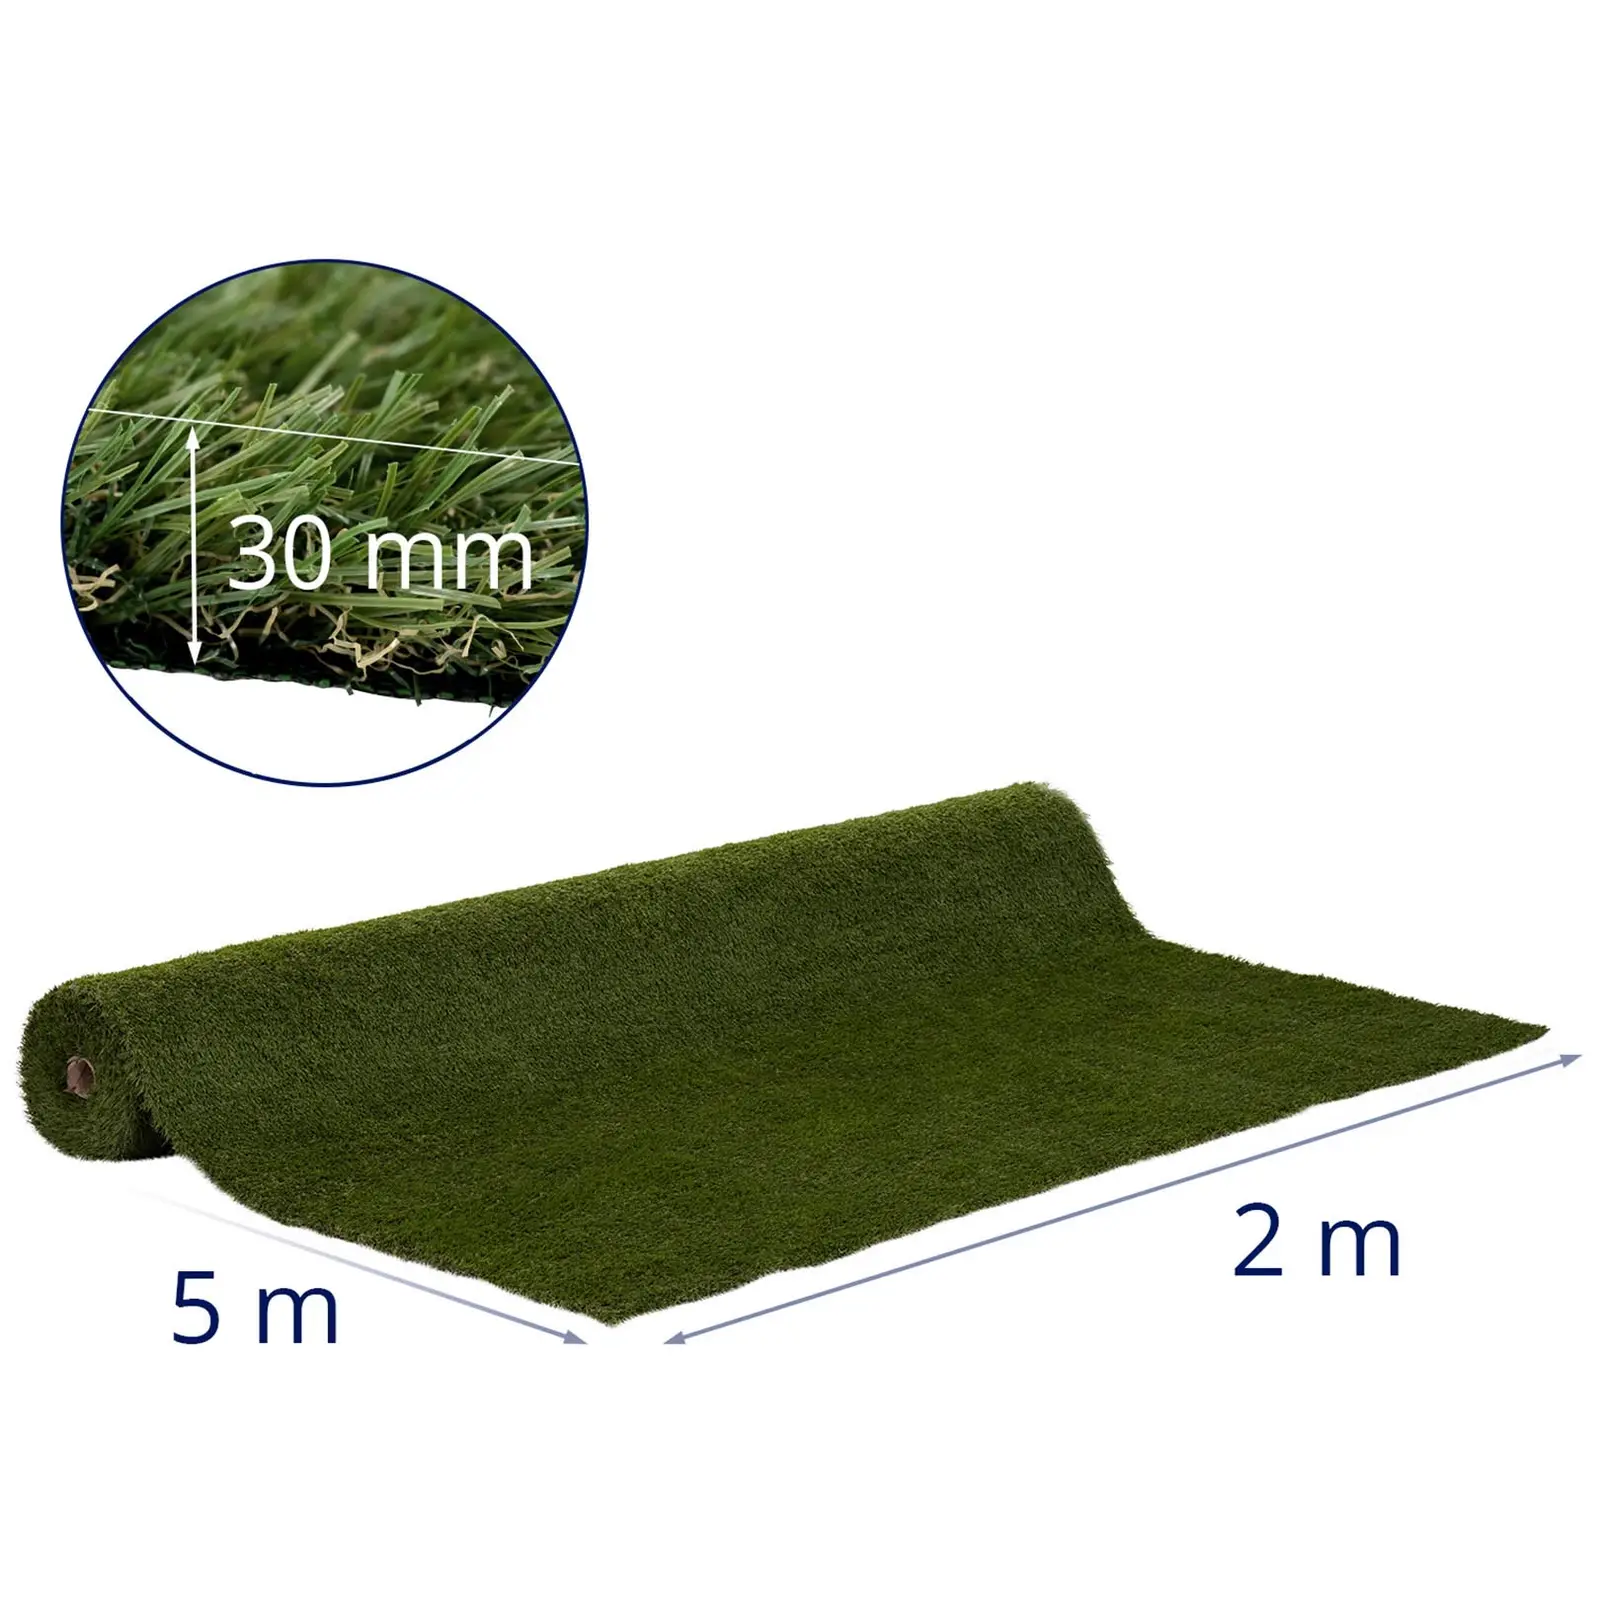 Umelý trávnik - 507 x 200 cm - výška: 30 mm - hustota stehu: 20/10 cm - odolný proti UV žiareniu